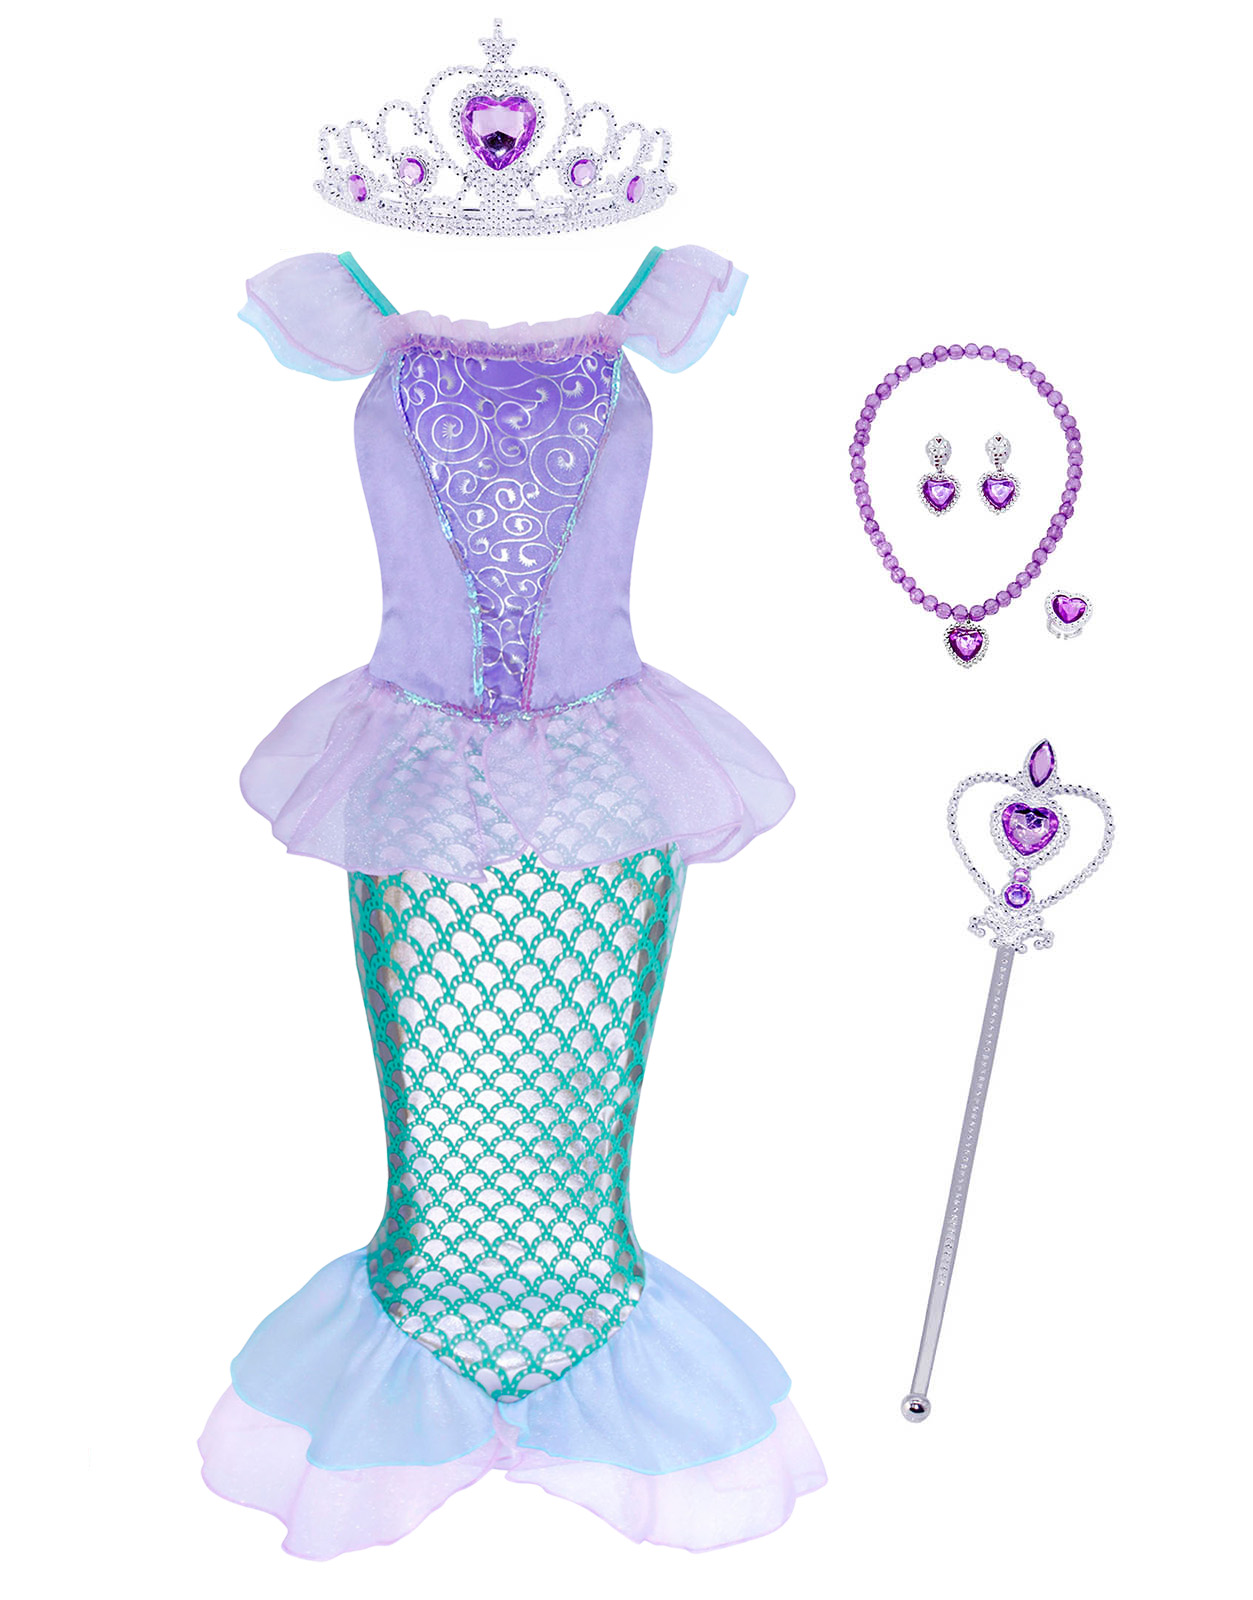 小美人魚服裝女孩裝扮兒童公主愛麗兒化裝萬聖節角色扮演幼兒女孩生日派對服裝帶配飾